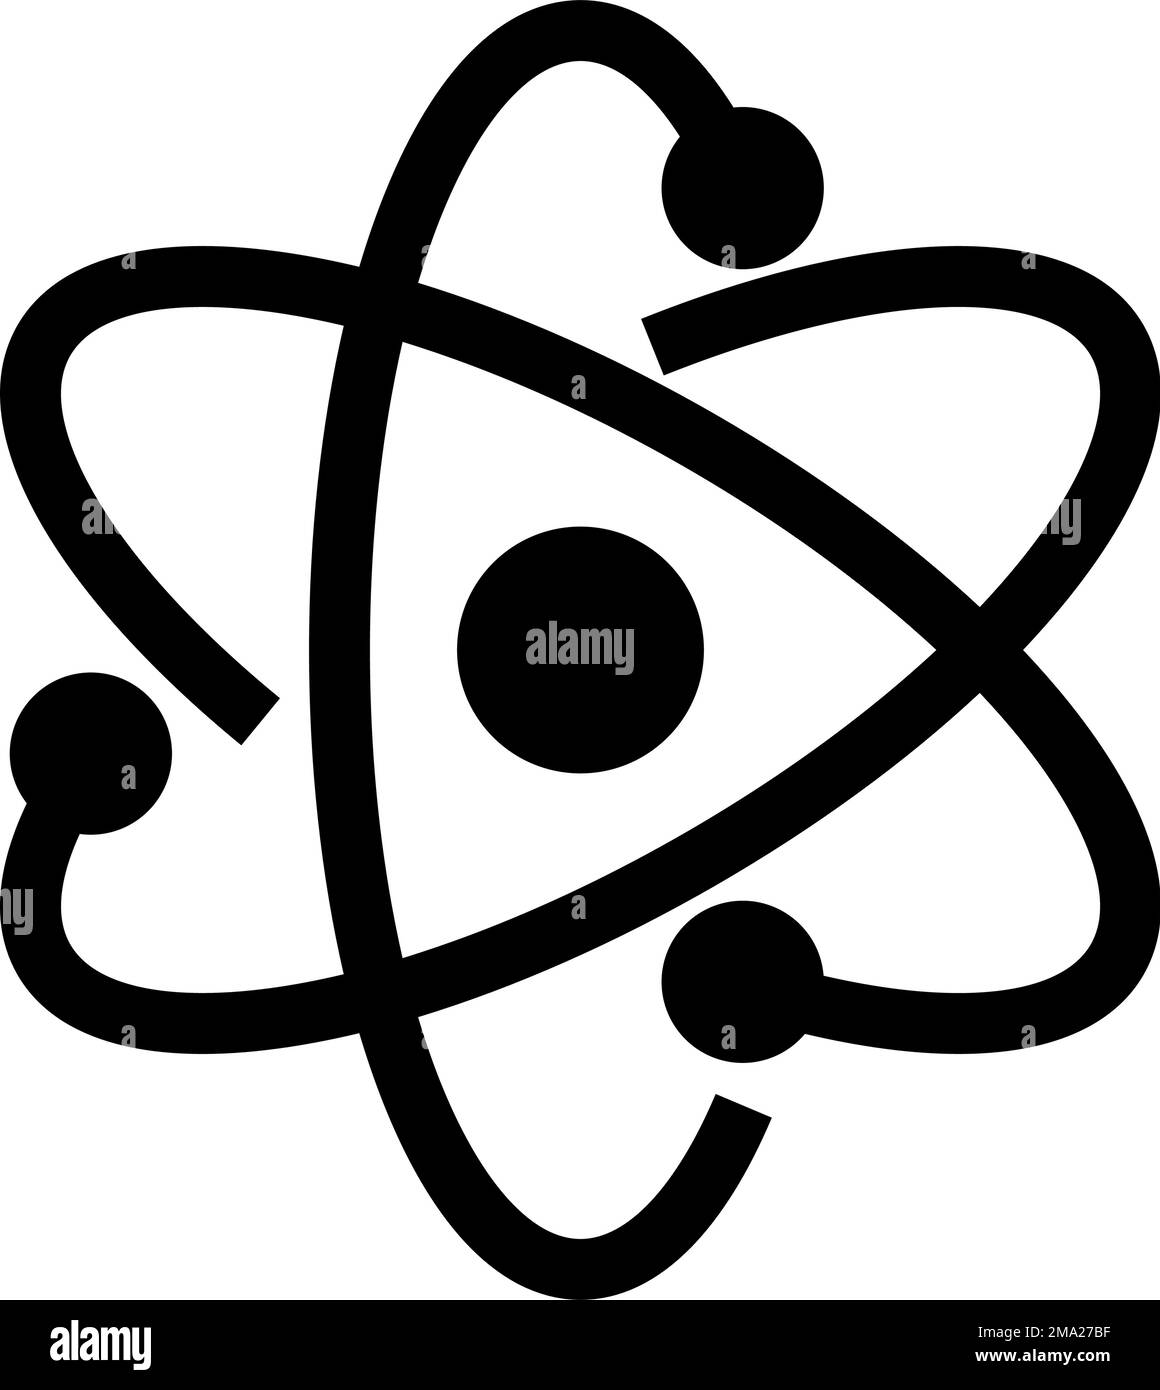 Atom-Silhouettensymbol mit Kern. Bearbeitbarer Vektor. Stock Vektor